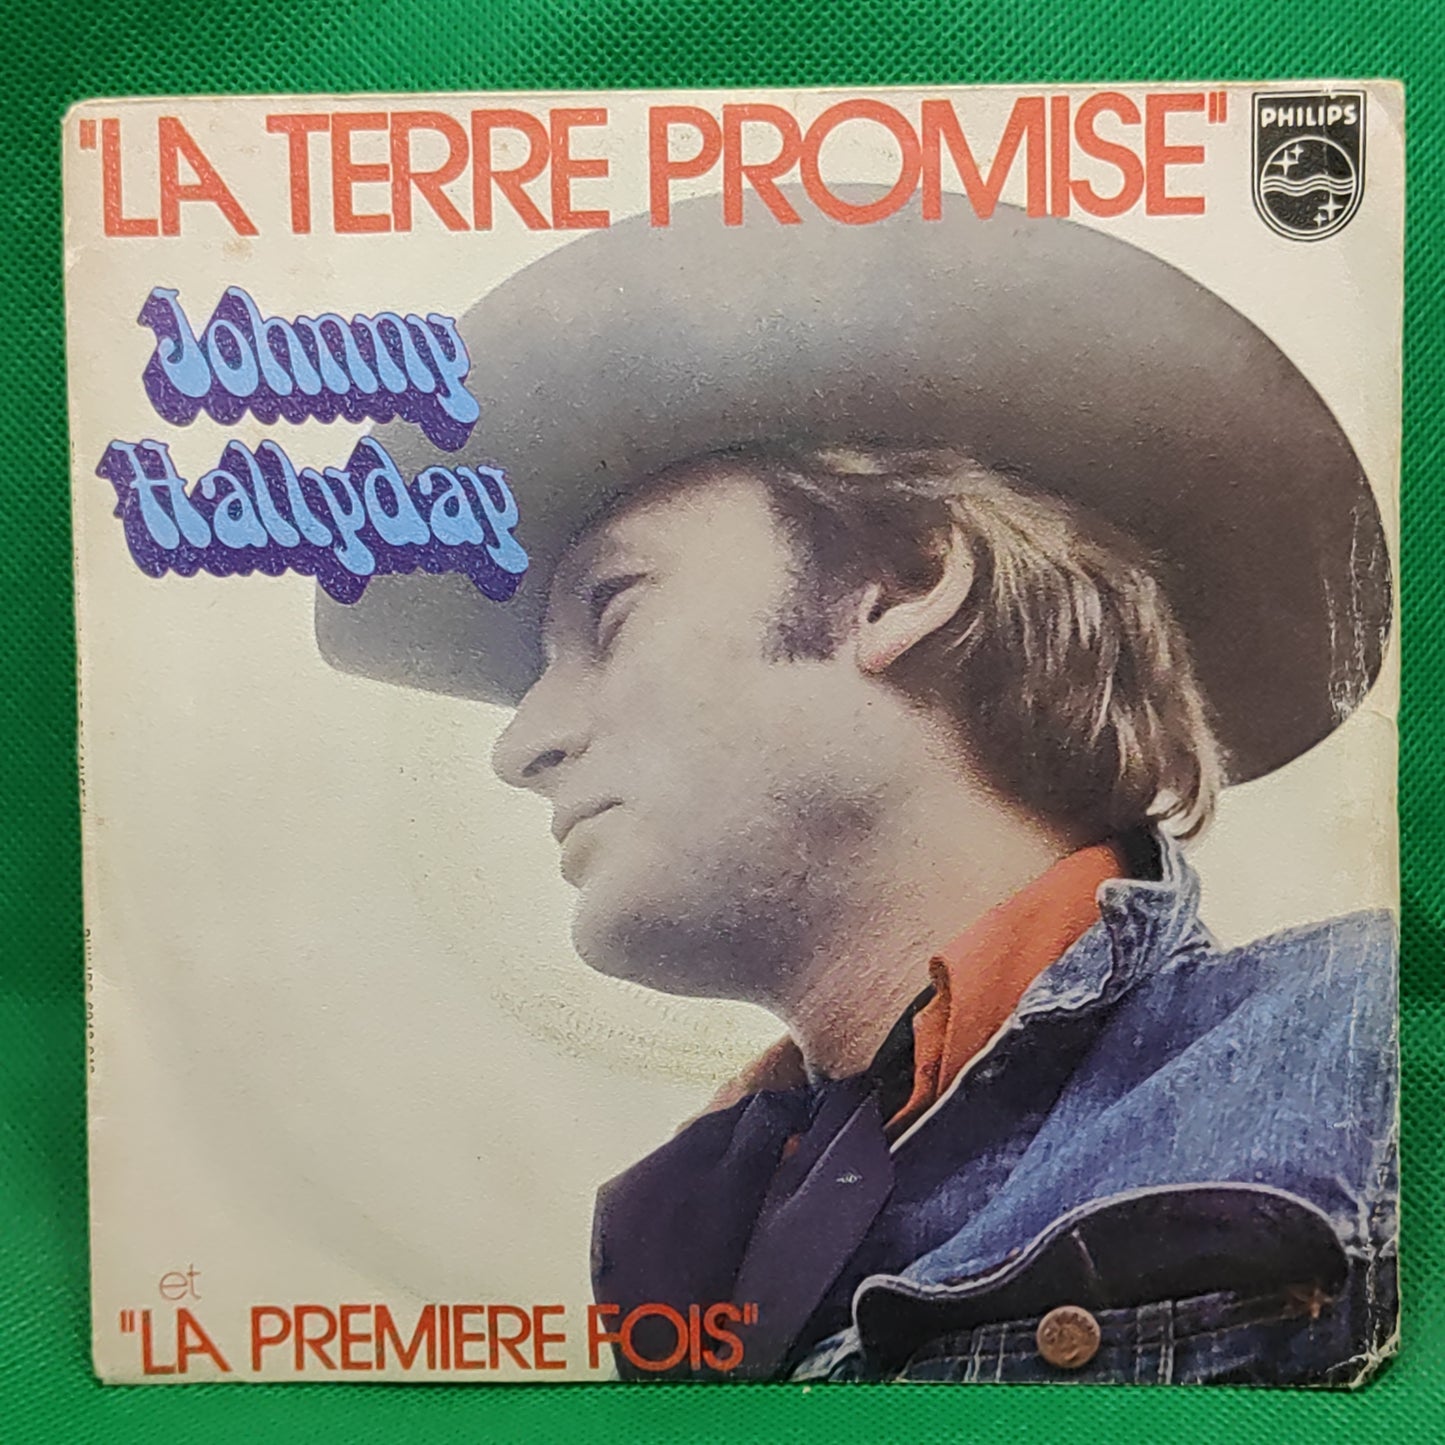 Johnny Hallyday - La Terre Promise"